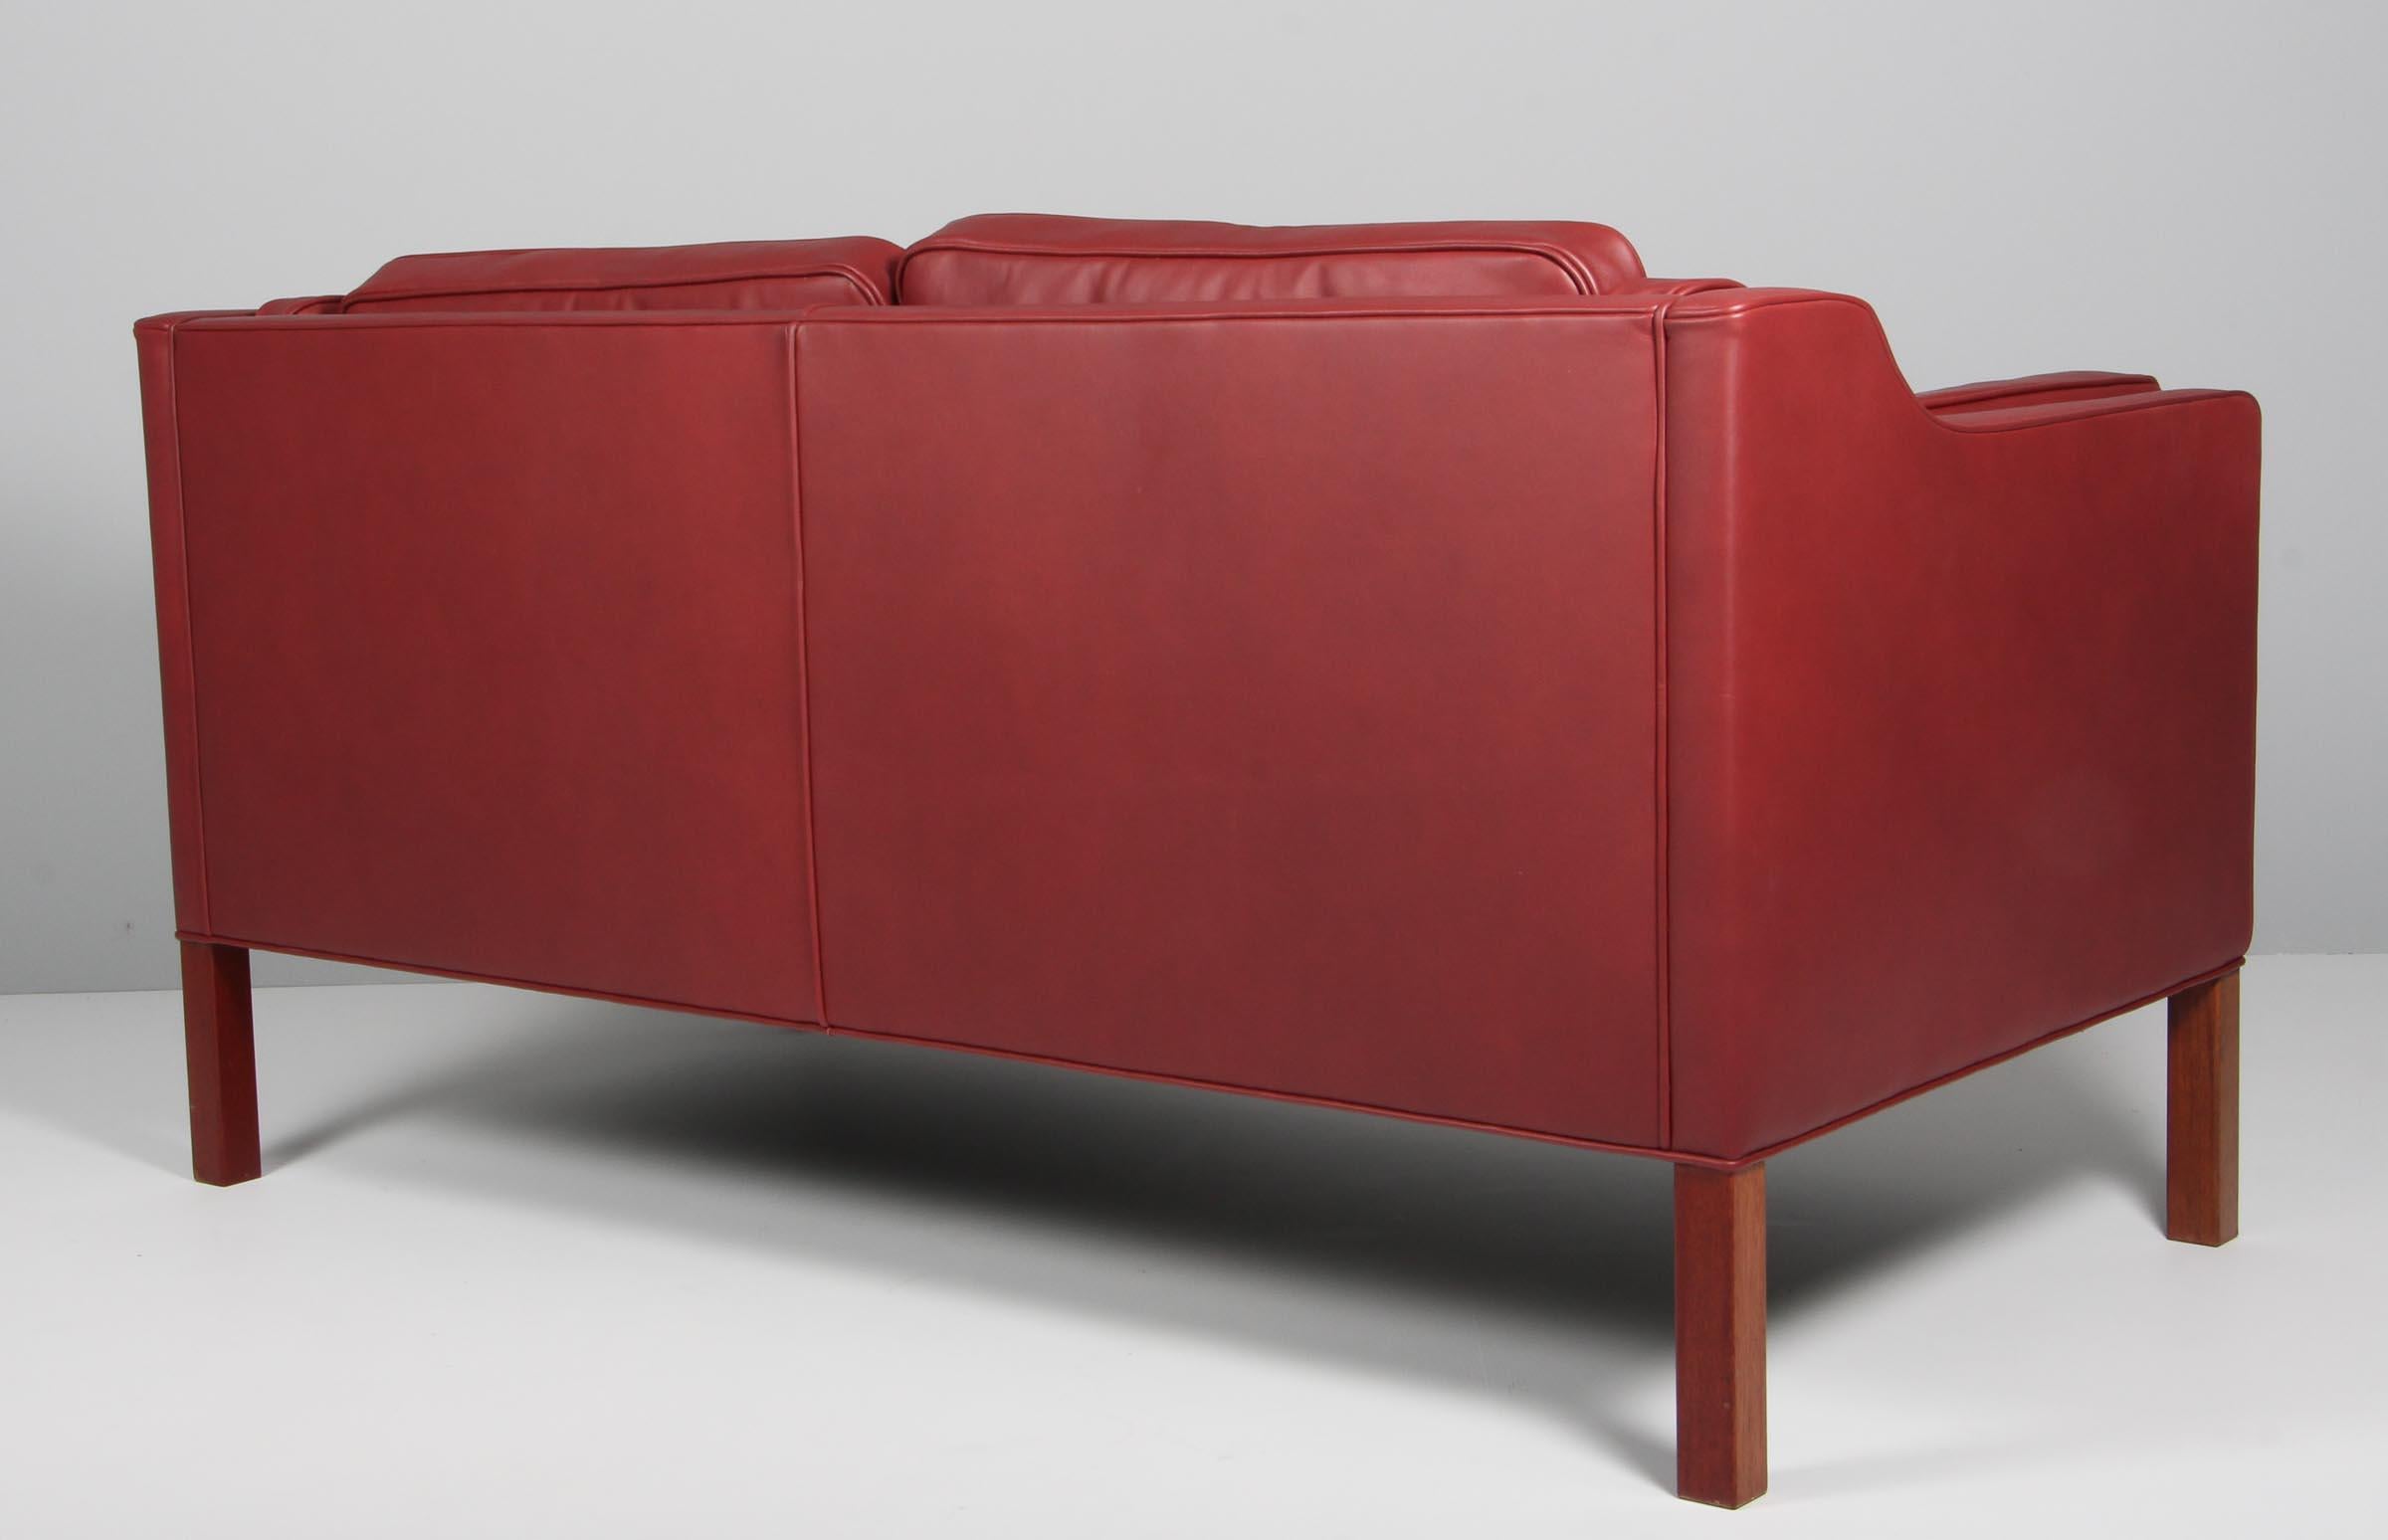 Børge Mogensen Zweisitzer-Sofa neu gepolstert mit indischrotem Anilinleder Eleganz.

Beine aus Mahagoni.

Modell 2212, hergestellt von Fredericia Furniture.